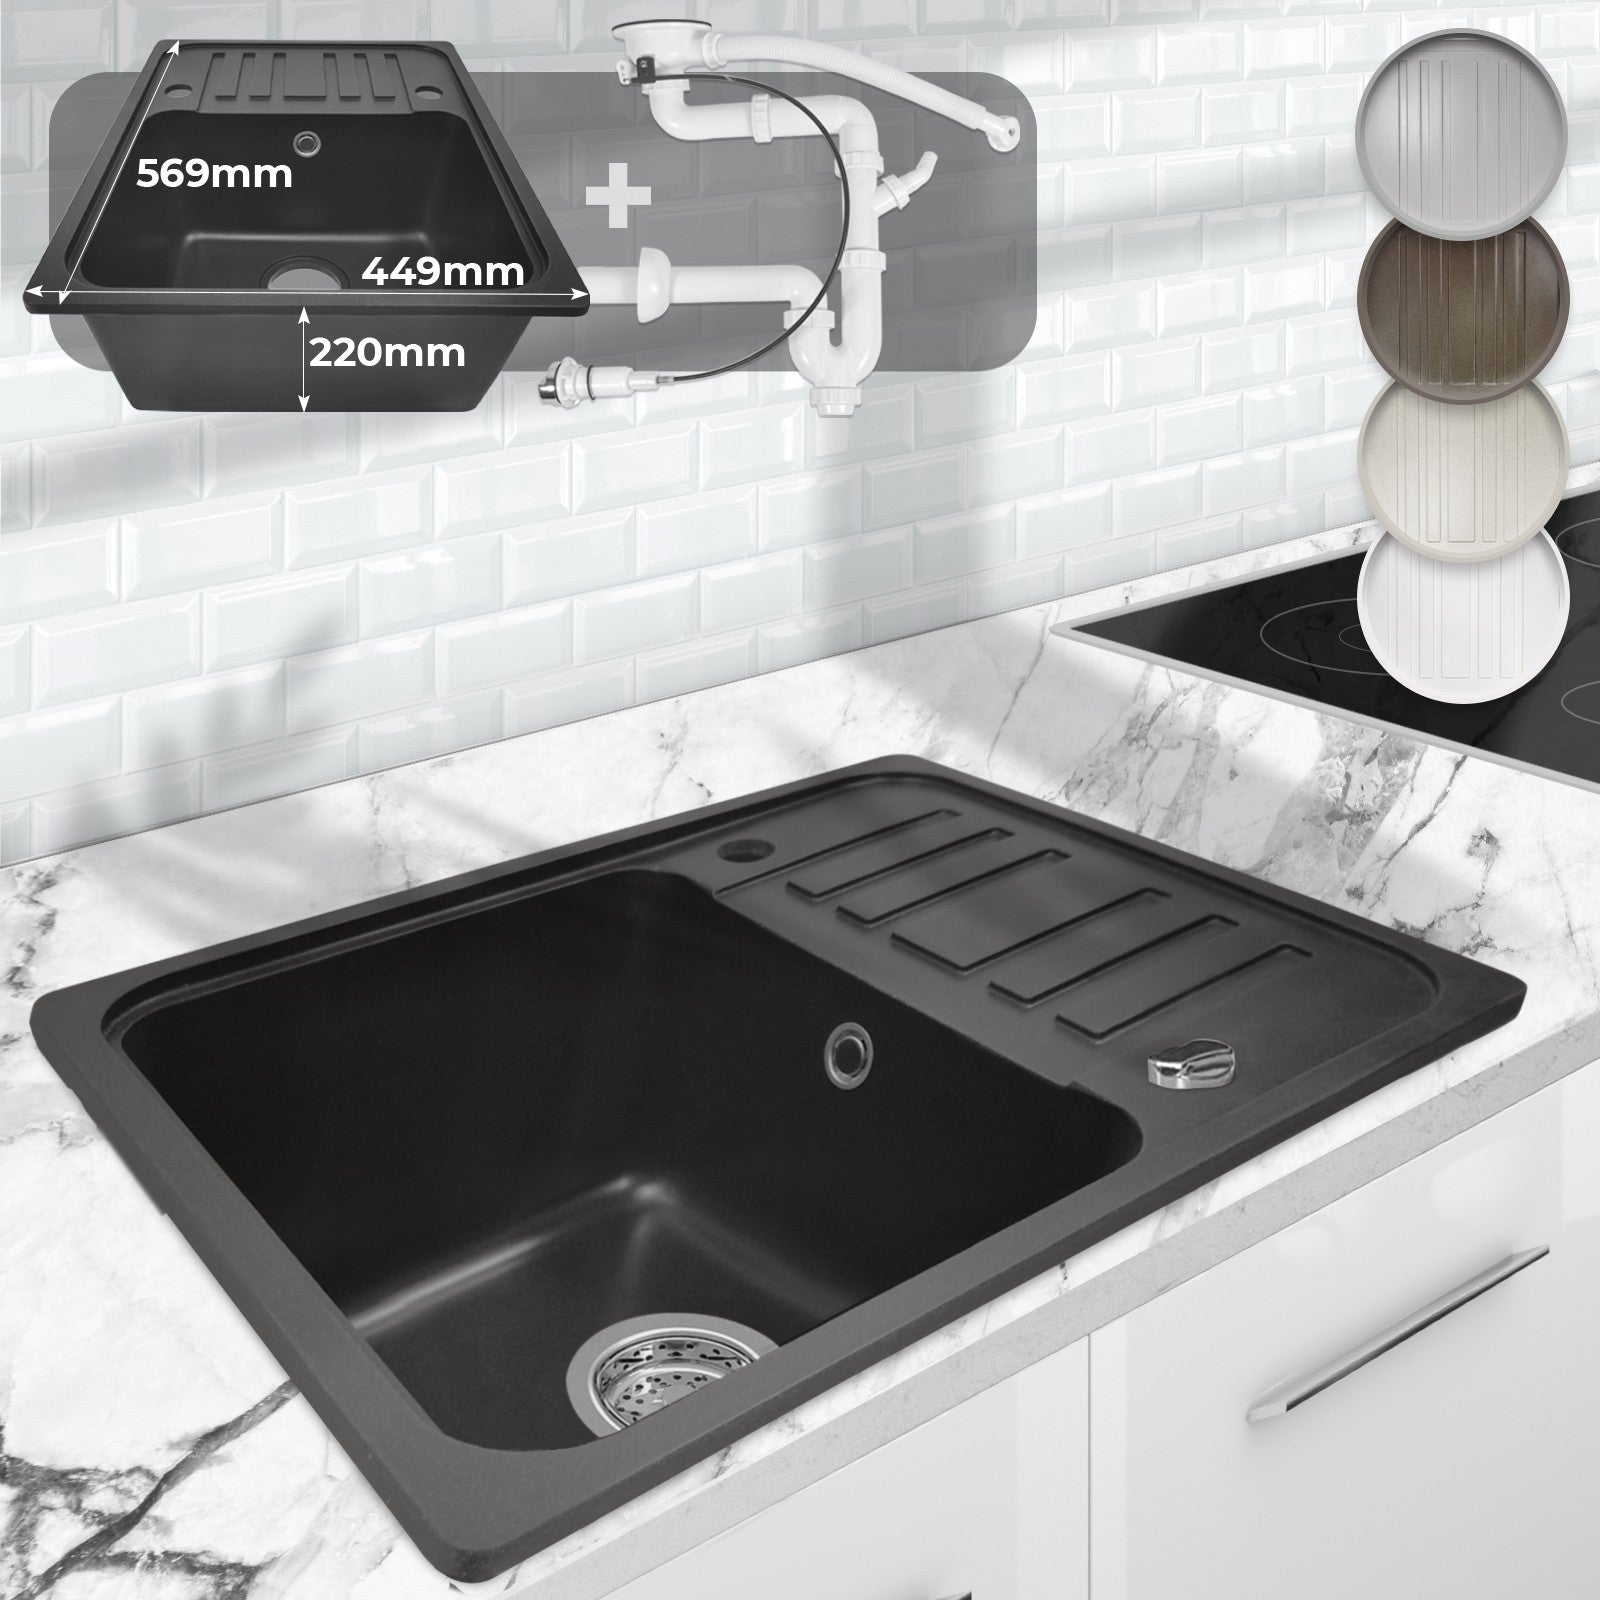 11: Køkkenvask i granit m/ pop-up afløb, vendbar, afløb, rektangulær, sort